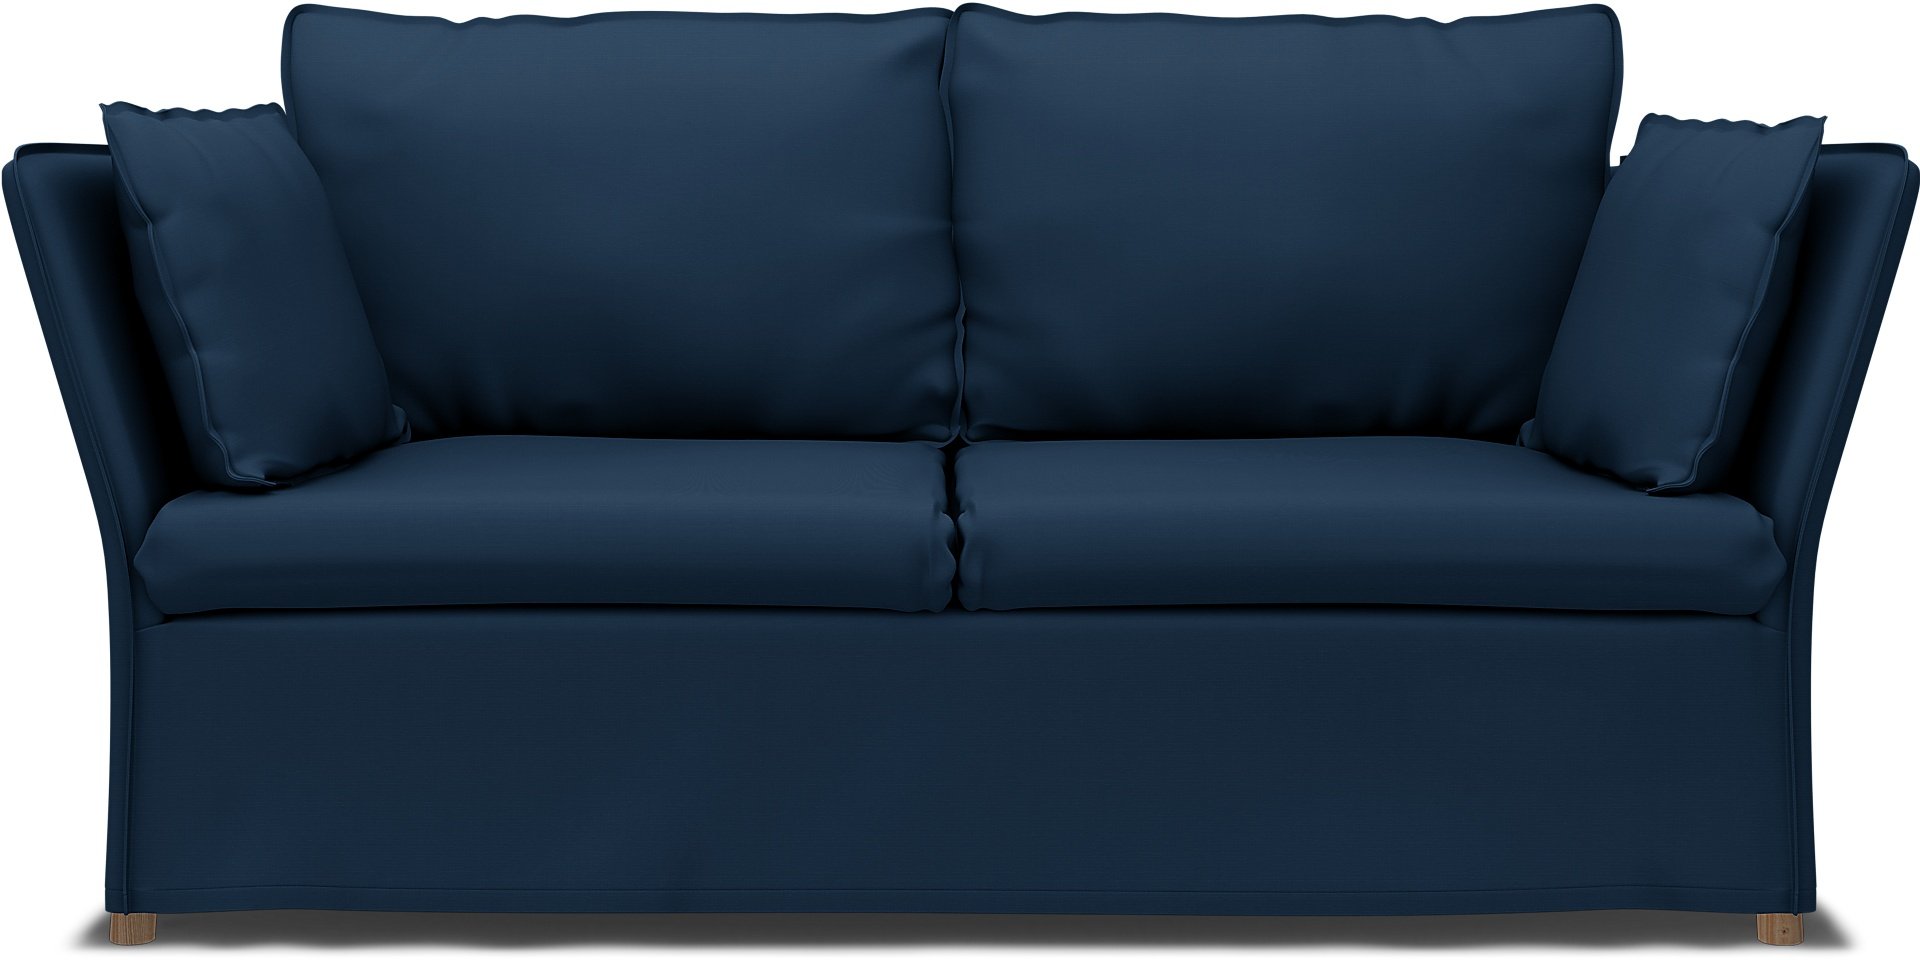 IKEA - Backsalen 2 seater sofa, Deep Navy Blue, Cotton - Bemz